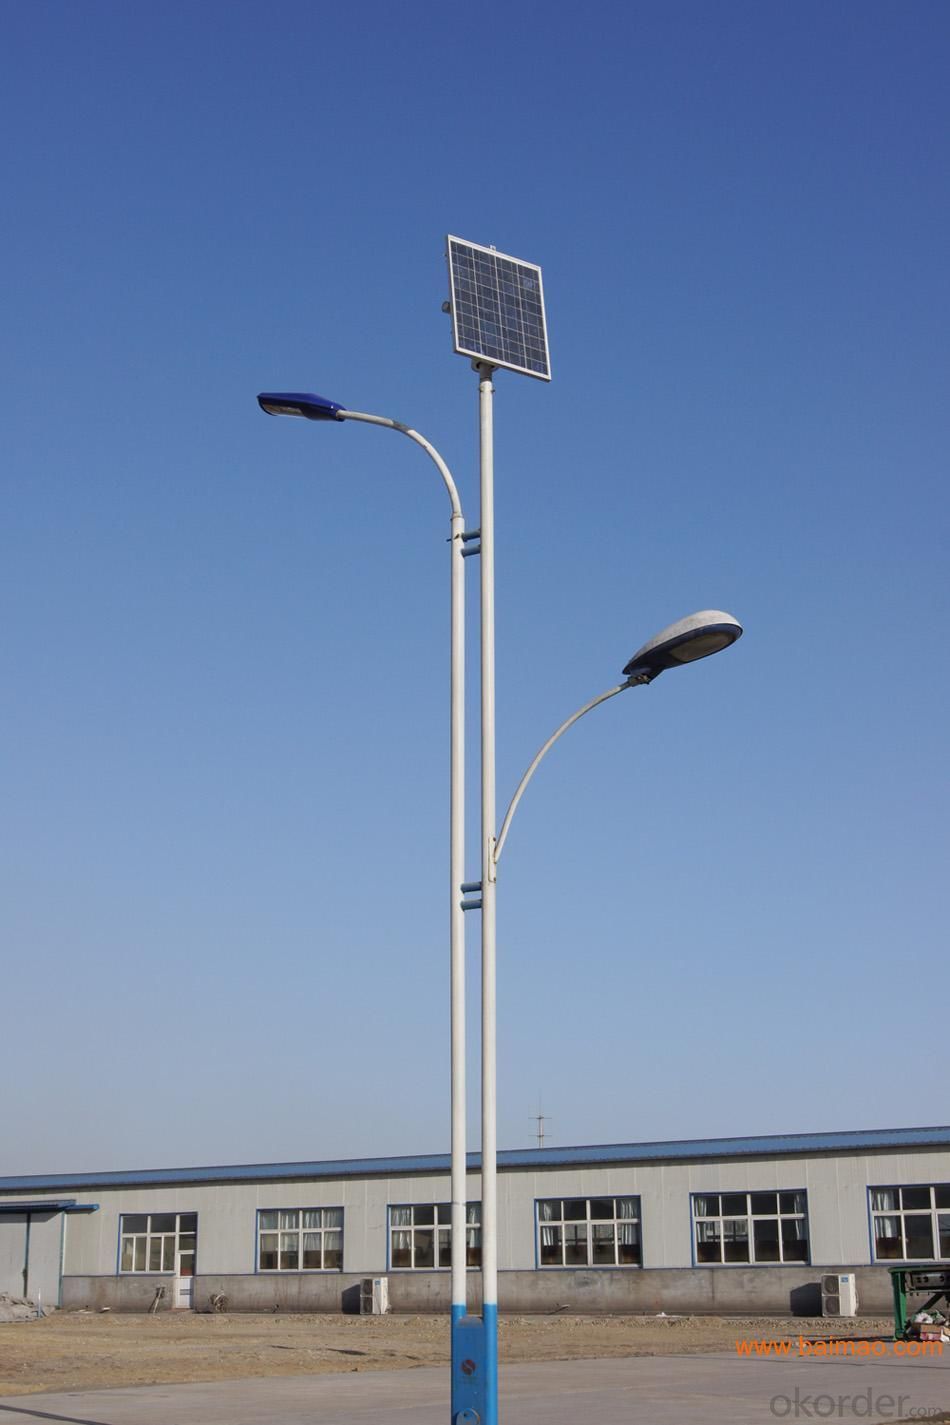 Farola callejera solar producto de nueva energía